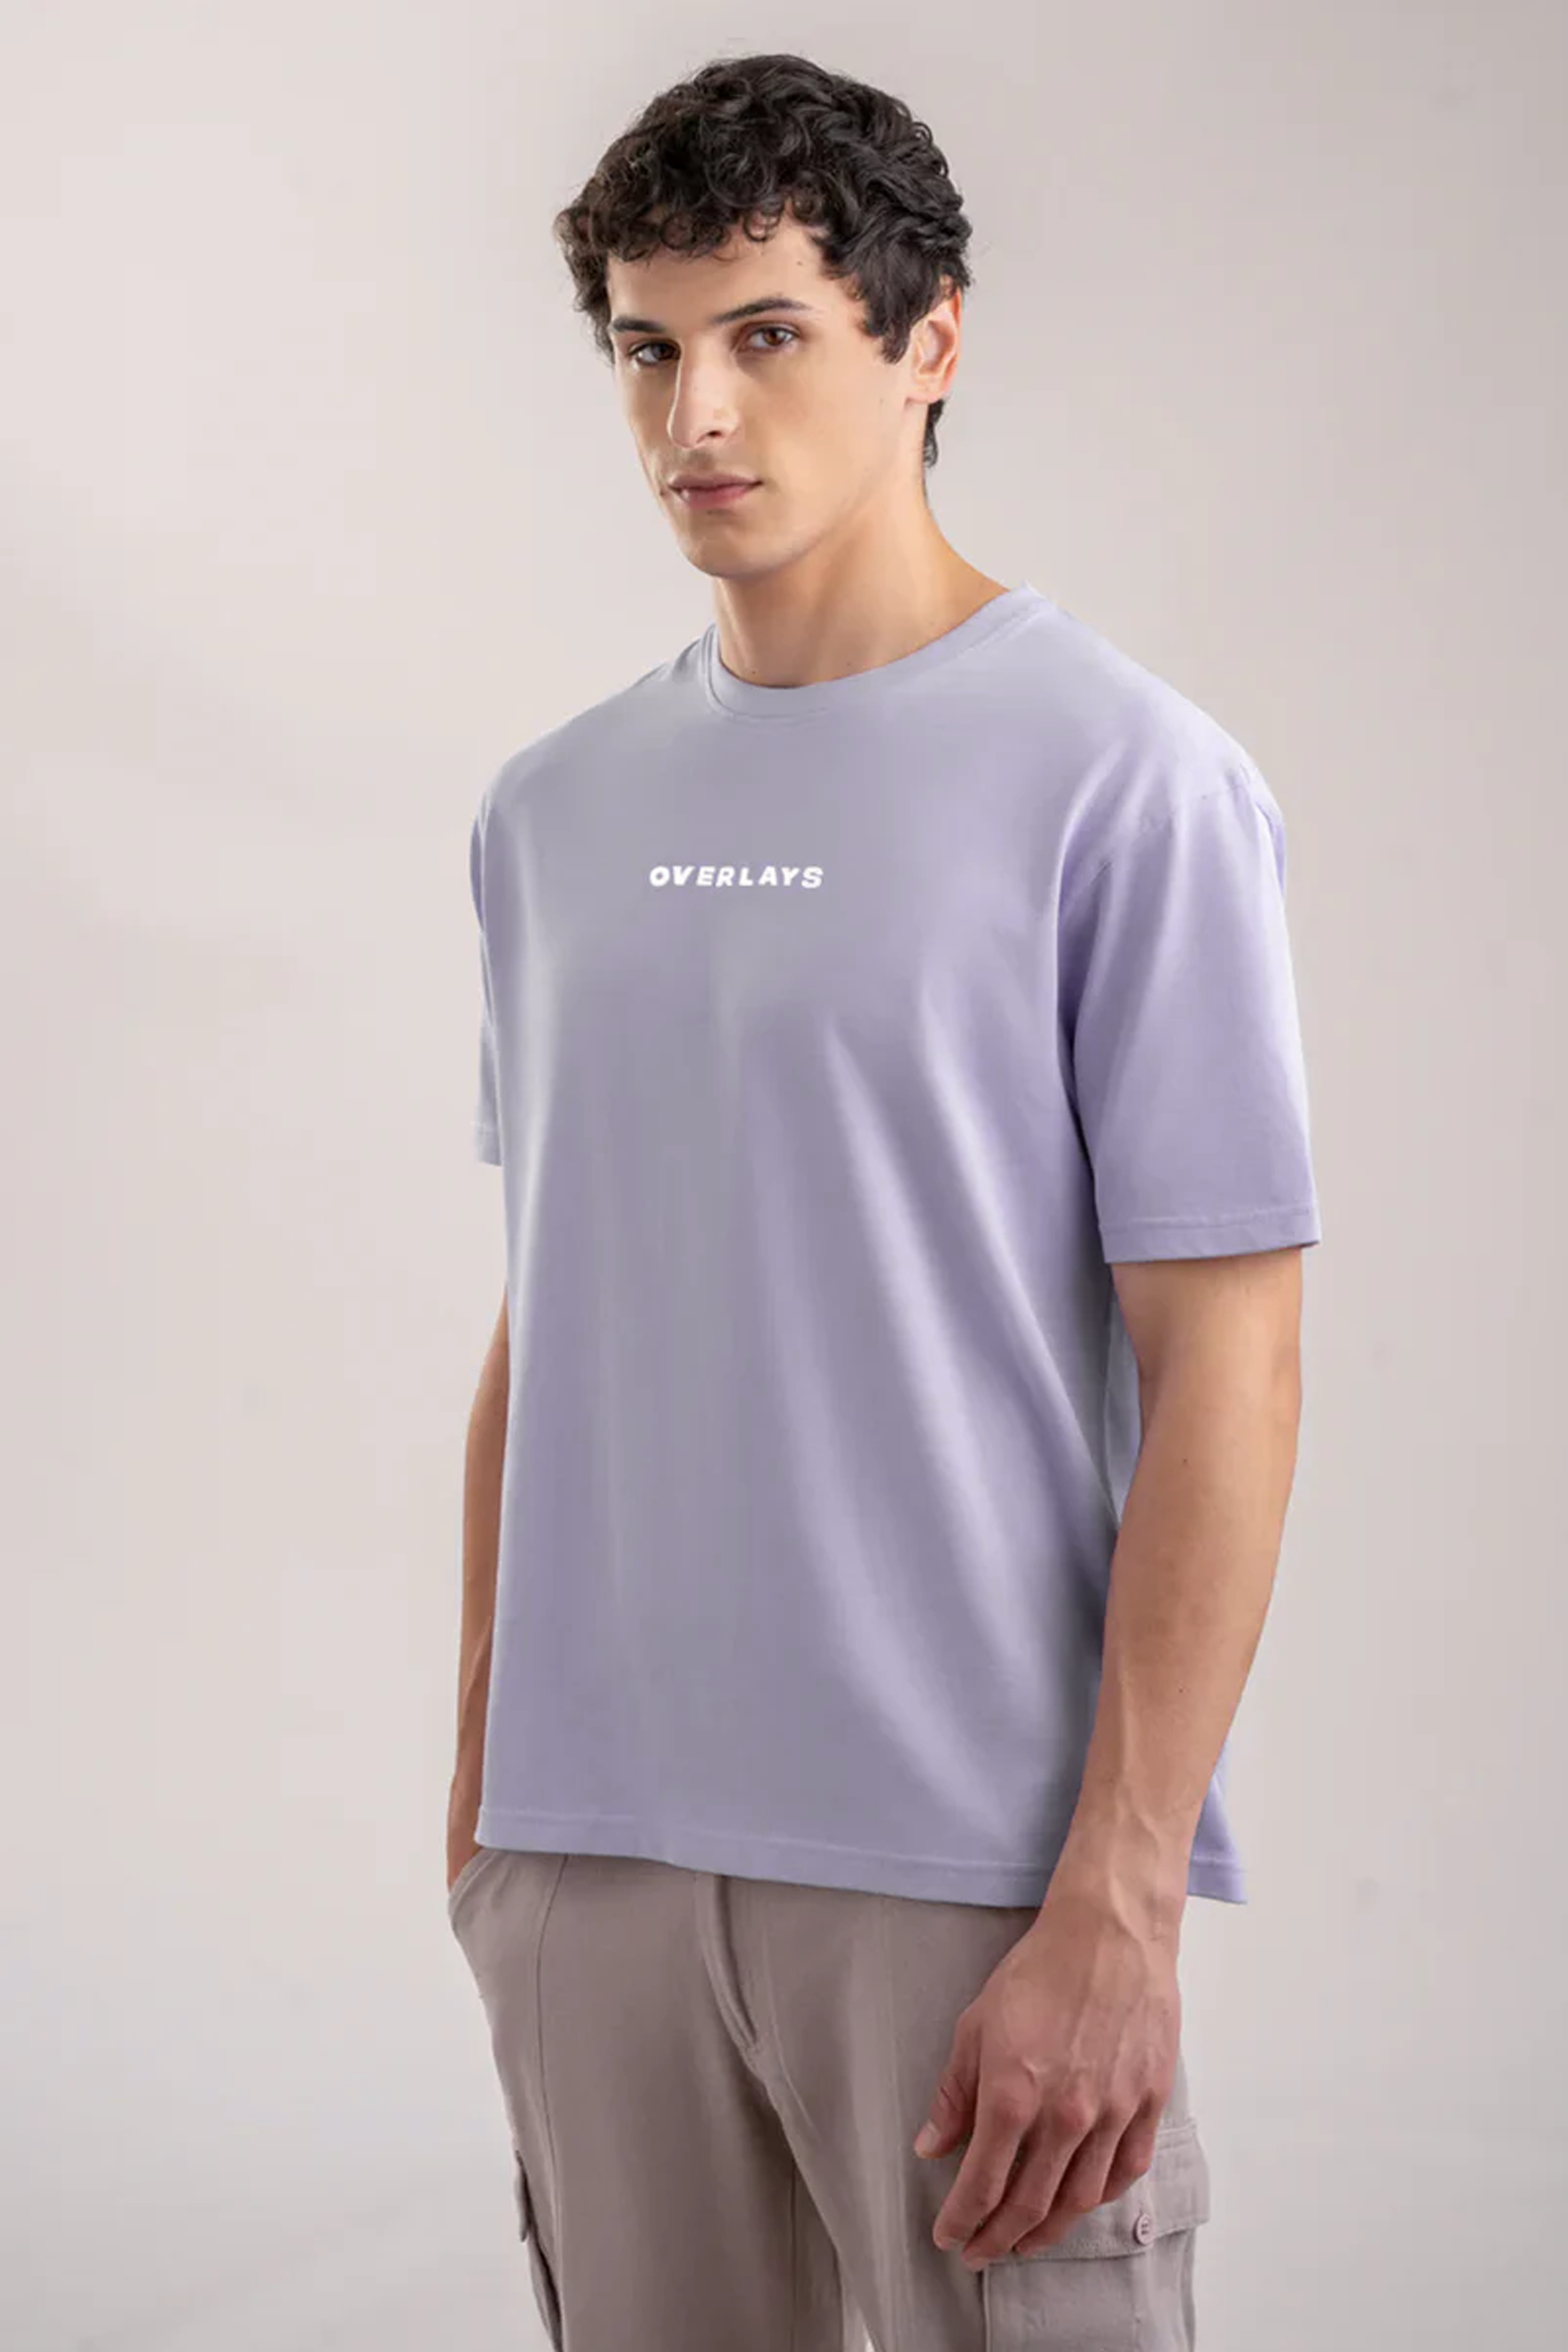 Blaze Relaxed Fit T-shirt - Ultra Soft